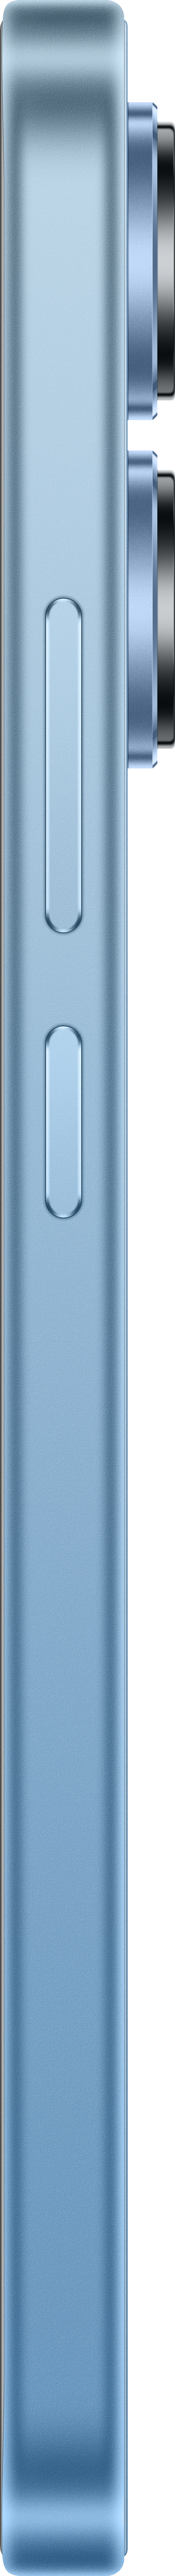 Ice SIM XIAOMI Blue Redmi Dual GB 13 Note 128